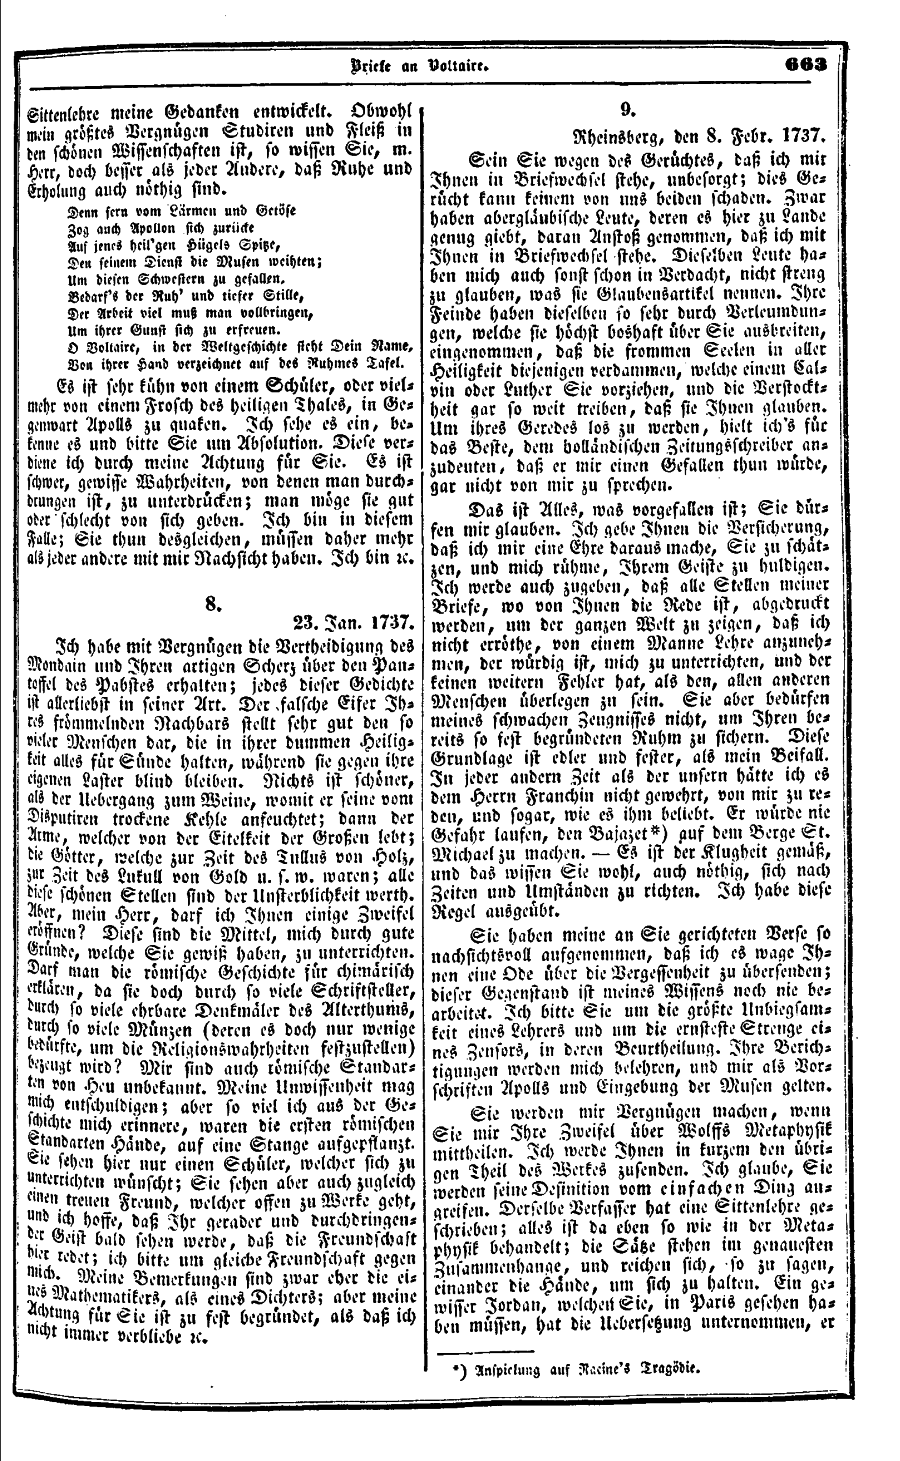 S. 663, Obj. 2